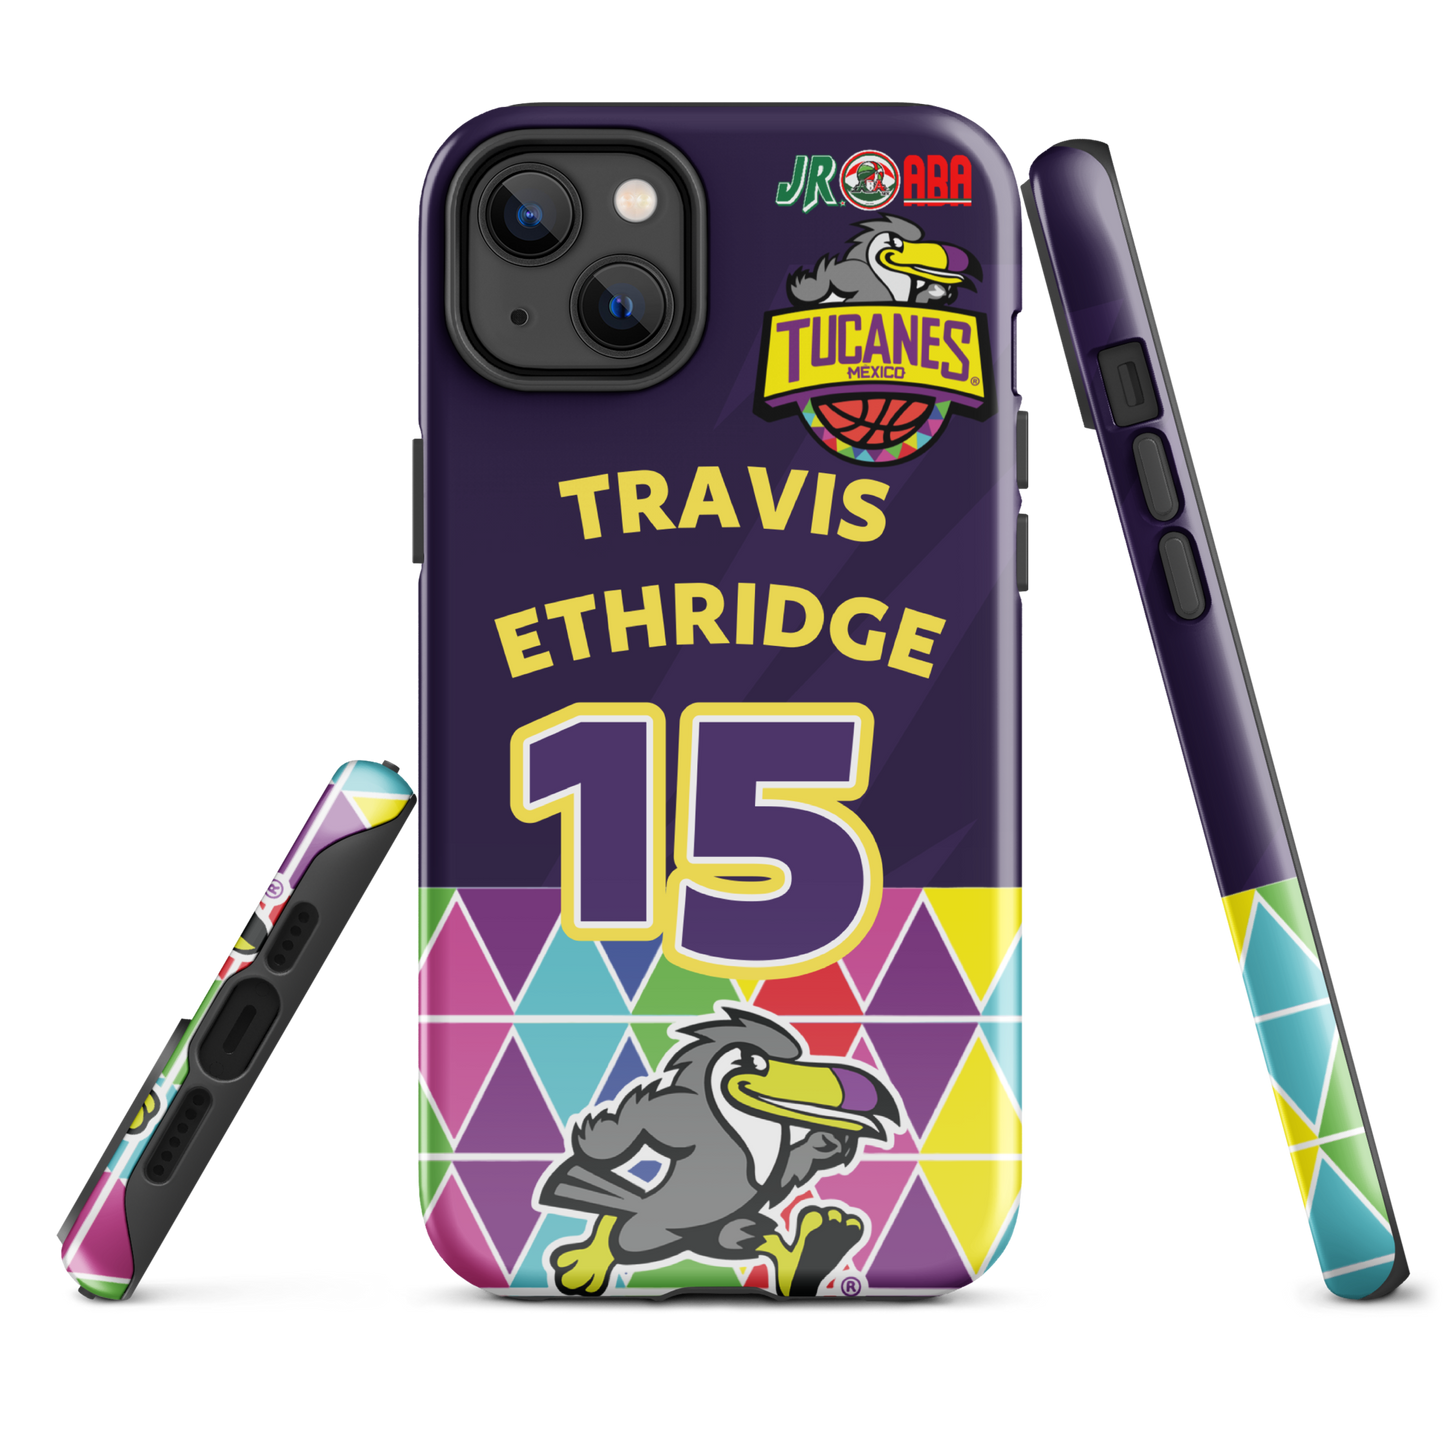 #15 TRAVIS ETHRIDGE - TMX TEAM Case for iPhone®